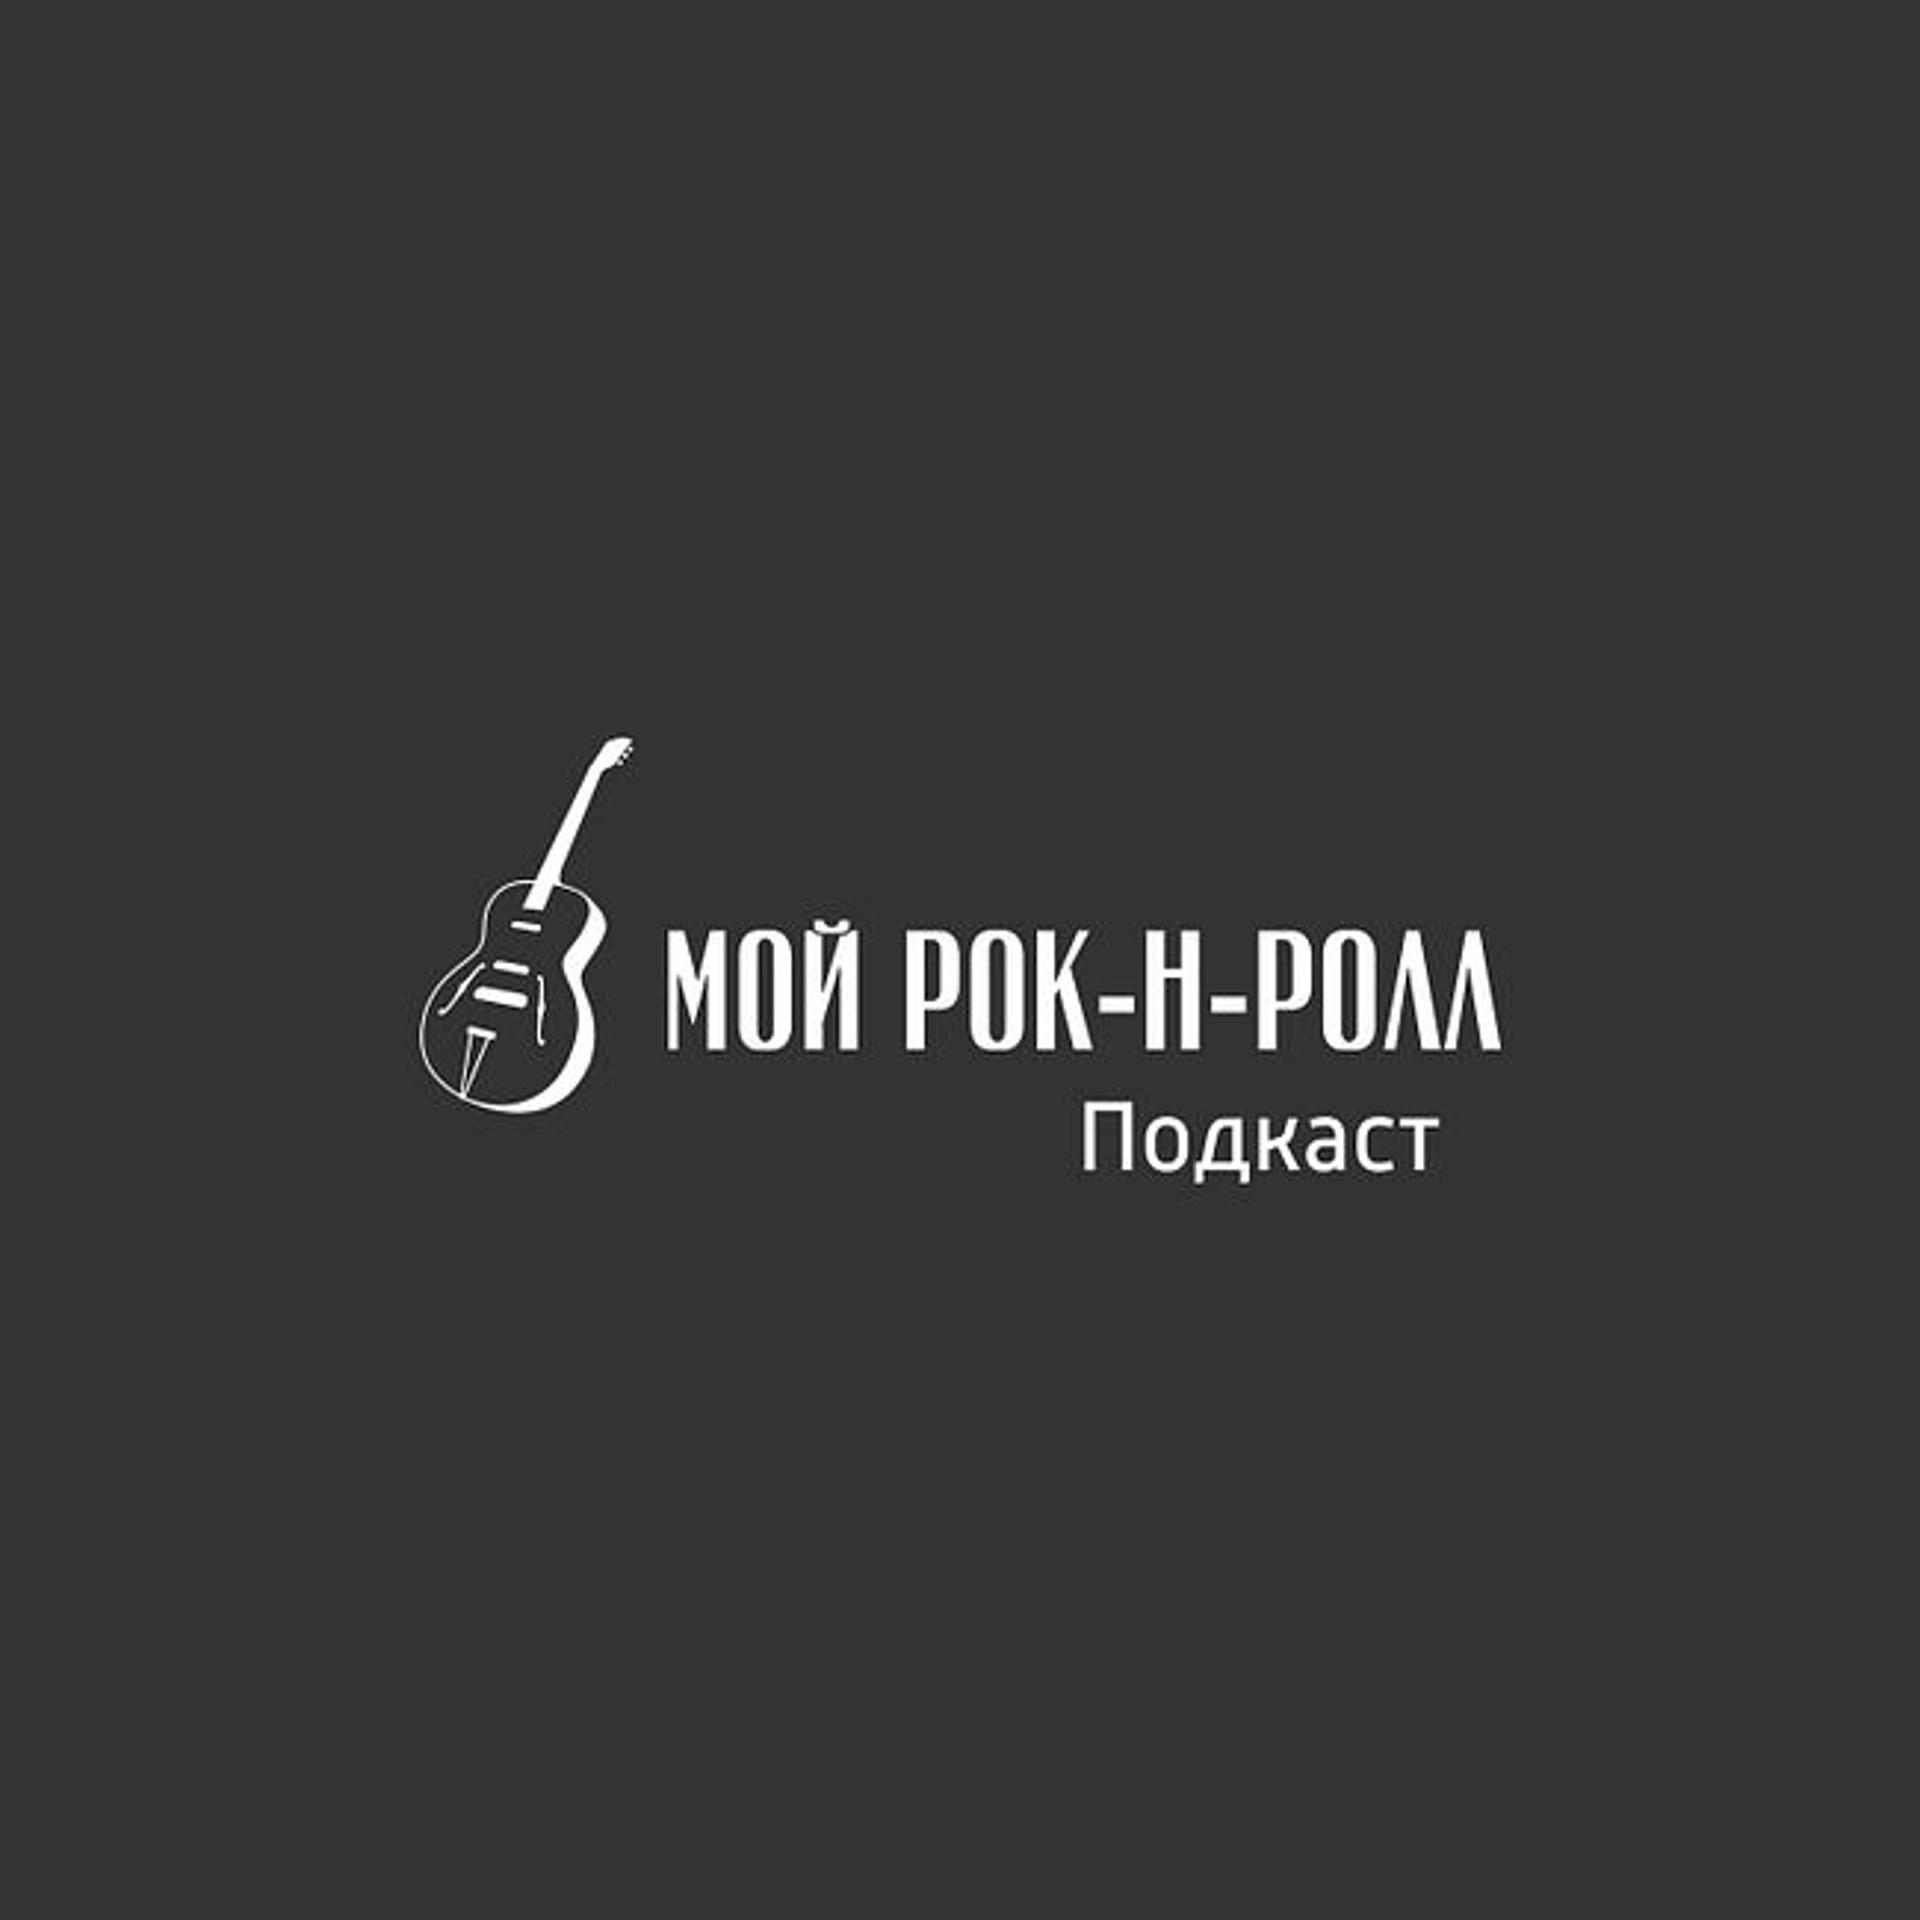 01. Николай Романов - звукотехник